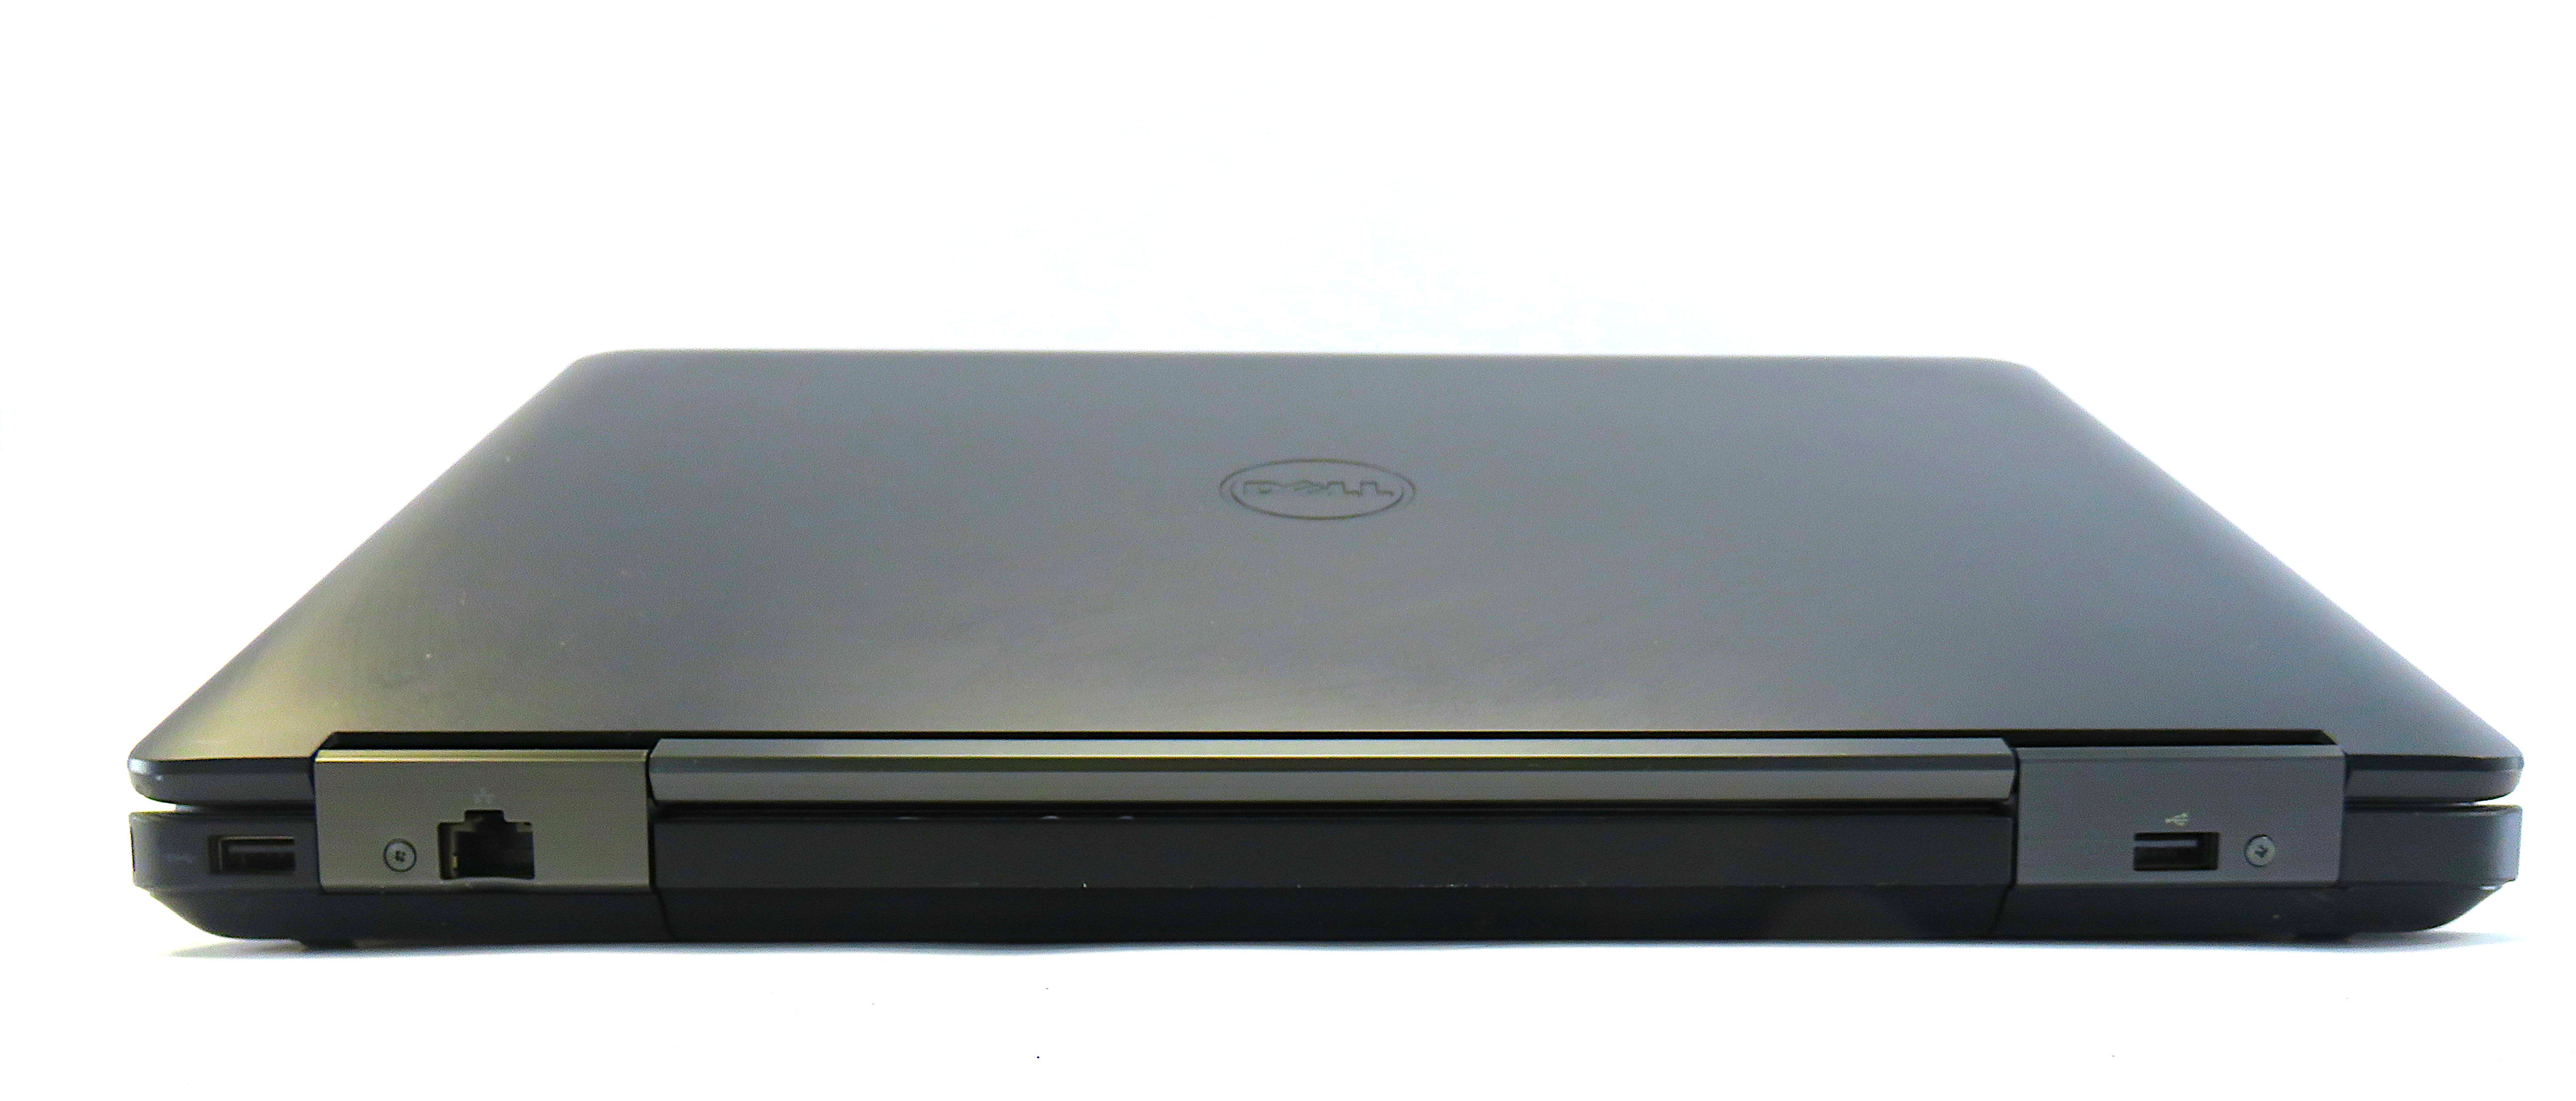 Dell Latitude E5540 Laptop, 15.6" Intel® Core i5, 8GB RAM, 256GB SSD